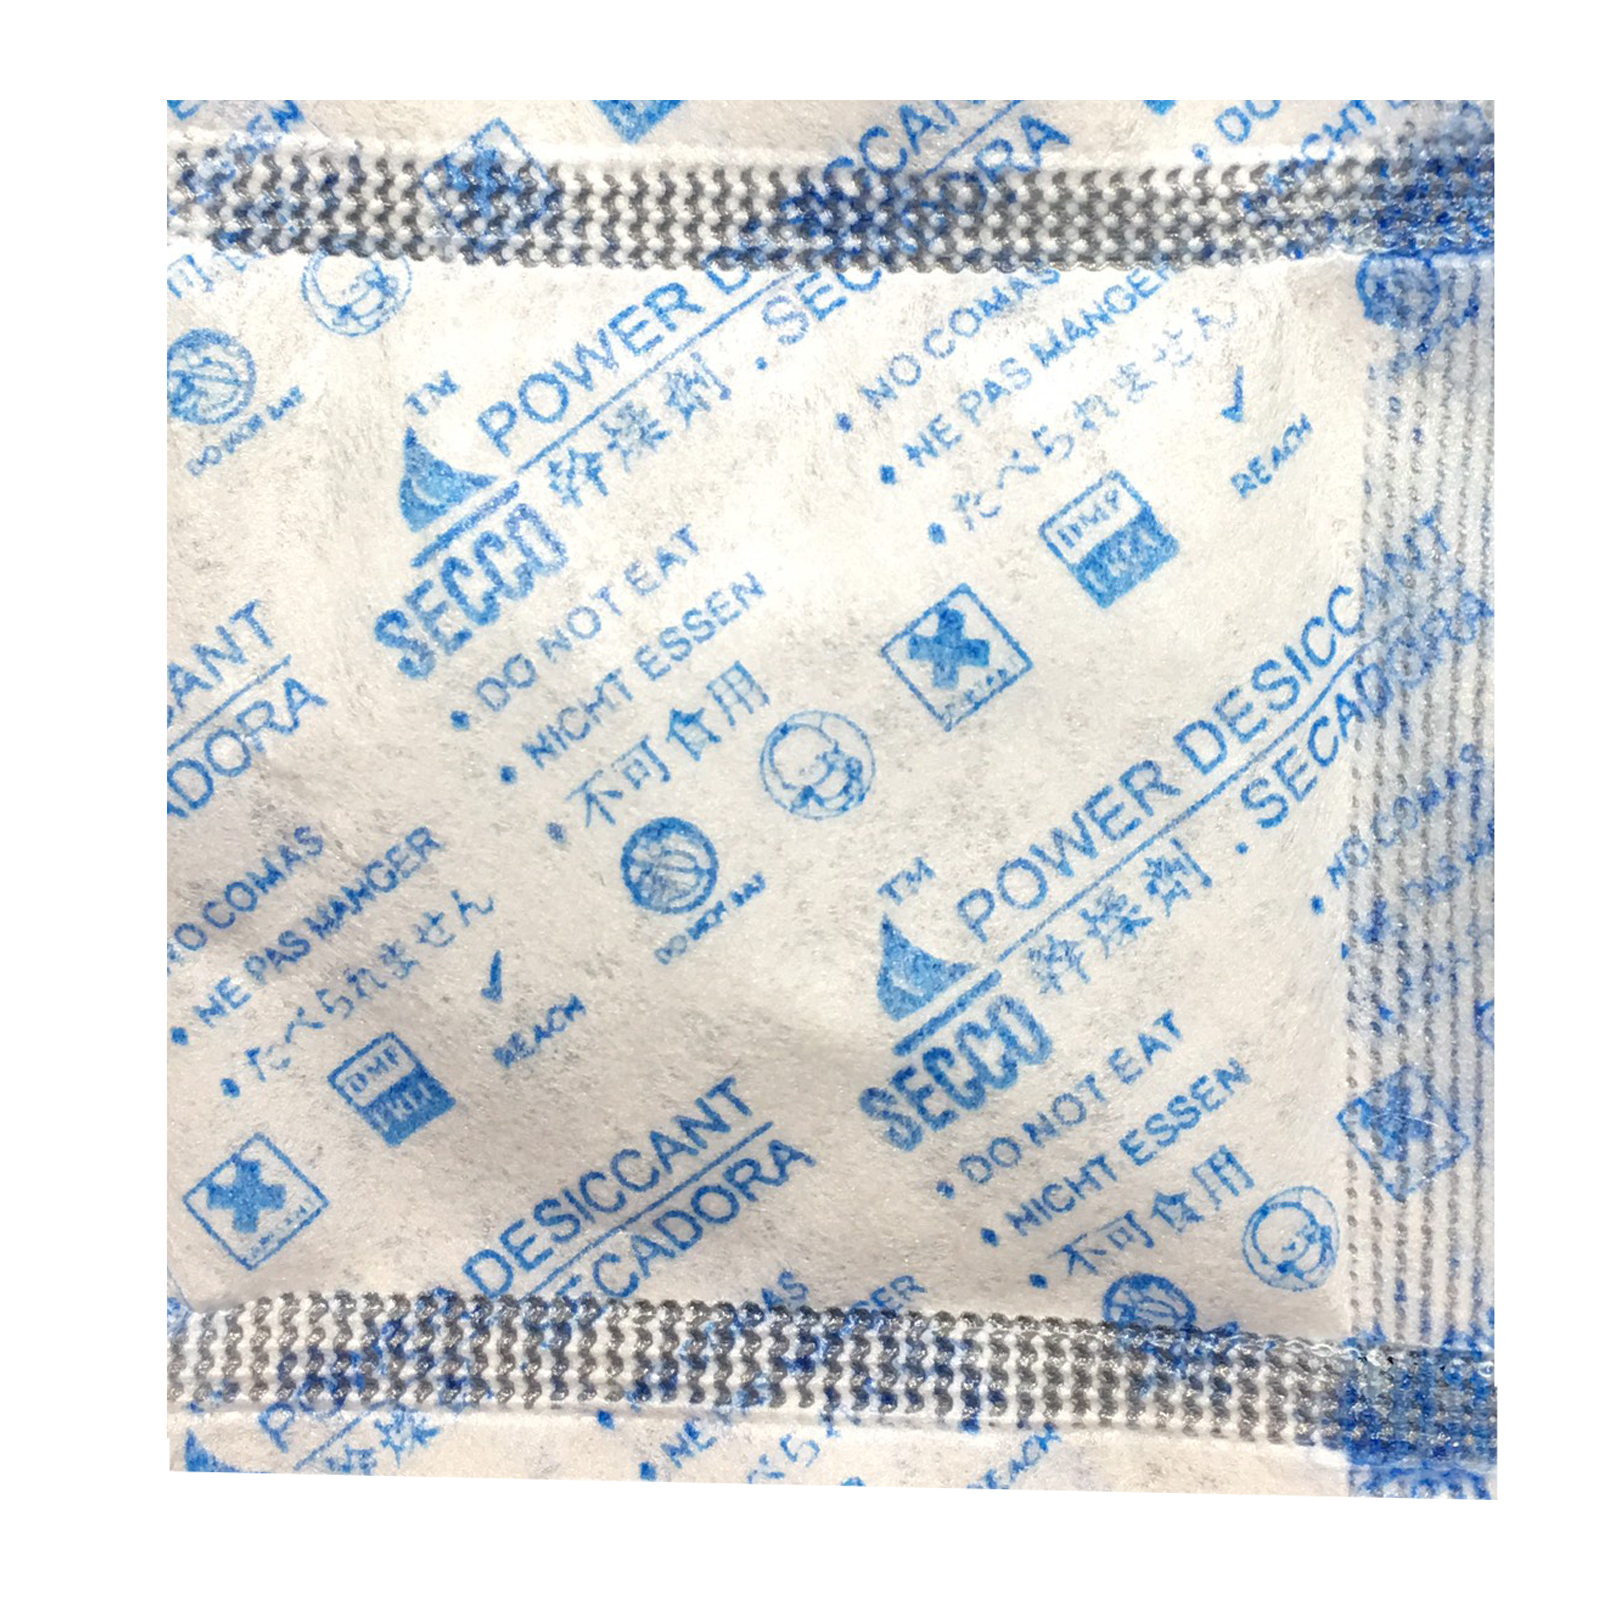 Túi hút ẩm Secco silica gel 3gr - 1kg (333 túi) - Chính hãng - Vải trắng - Chữ xanh logo